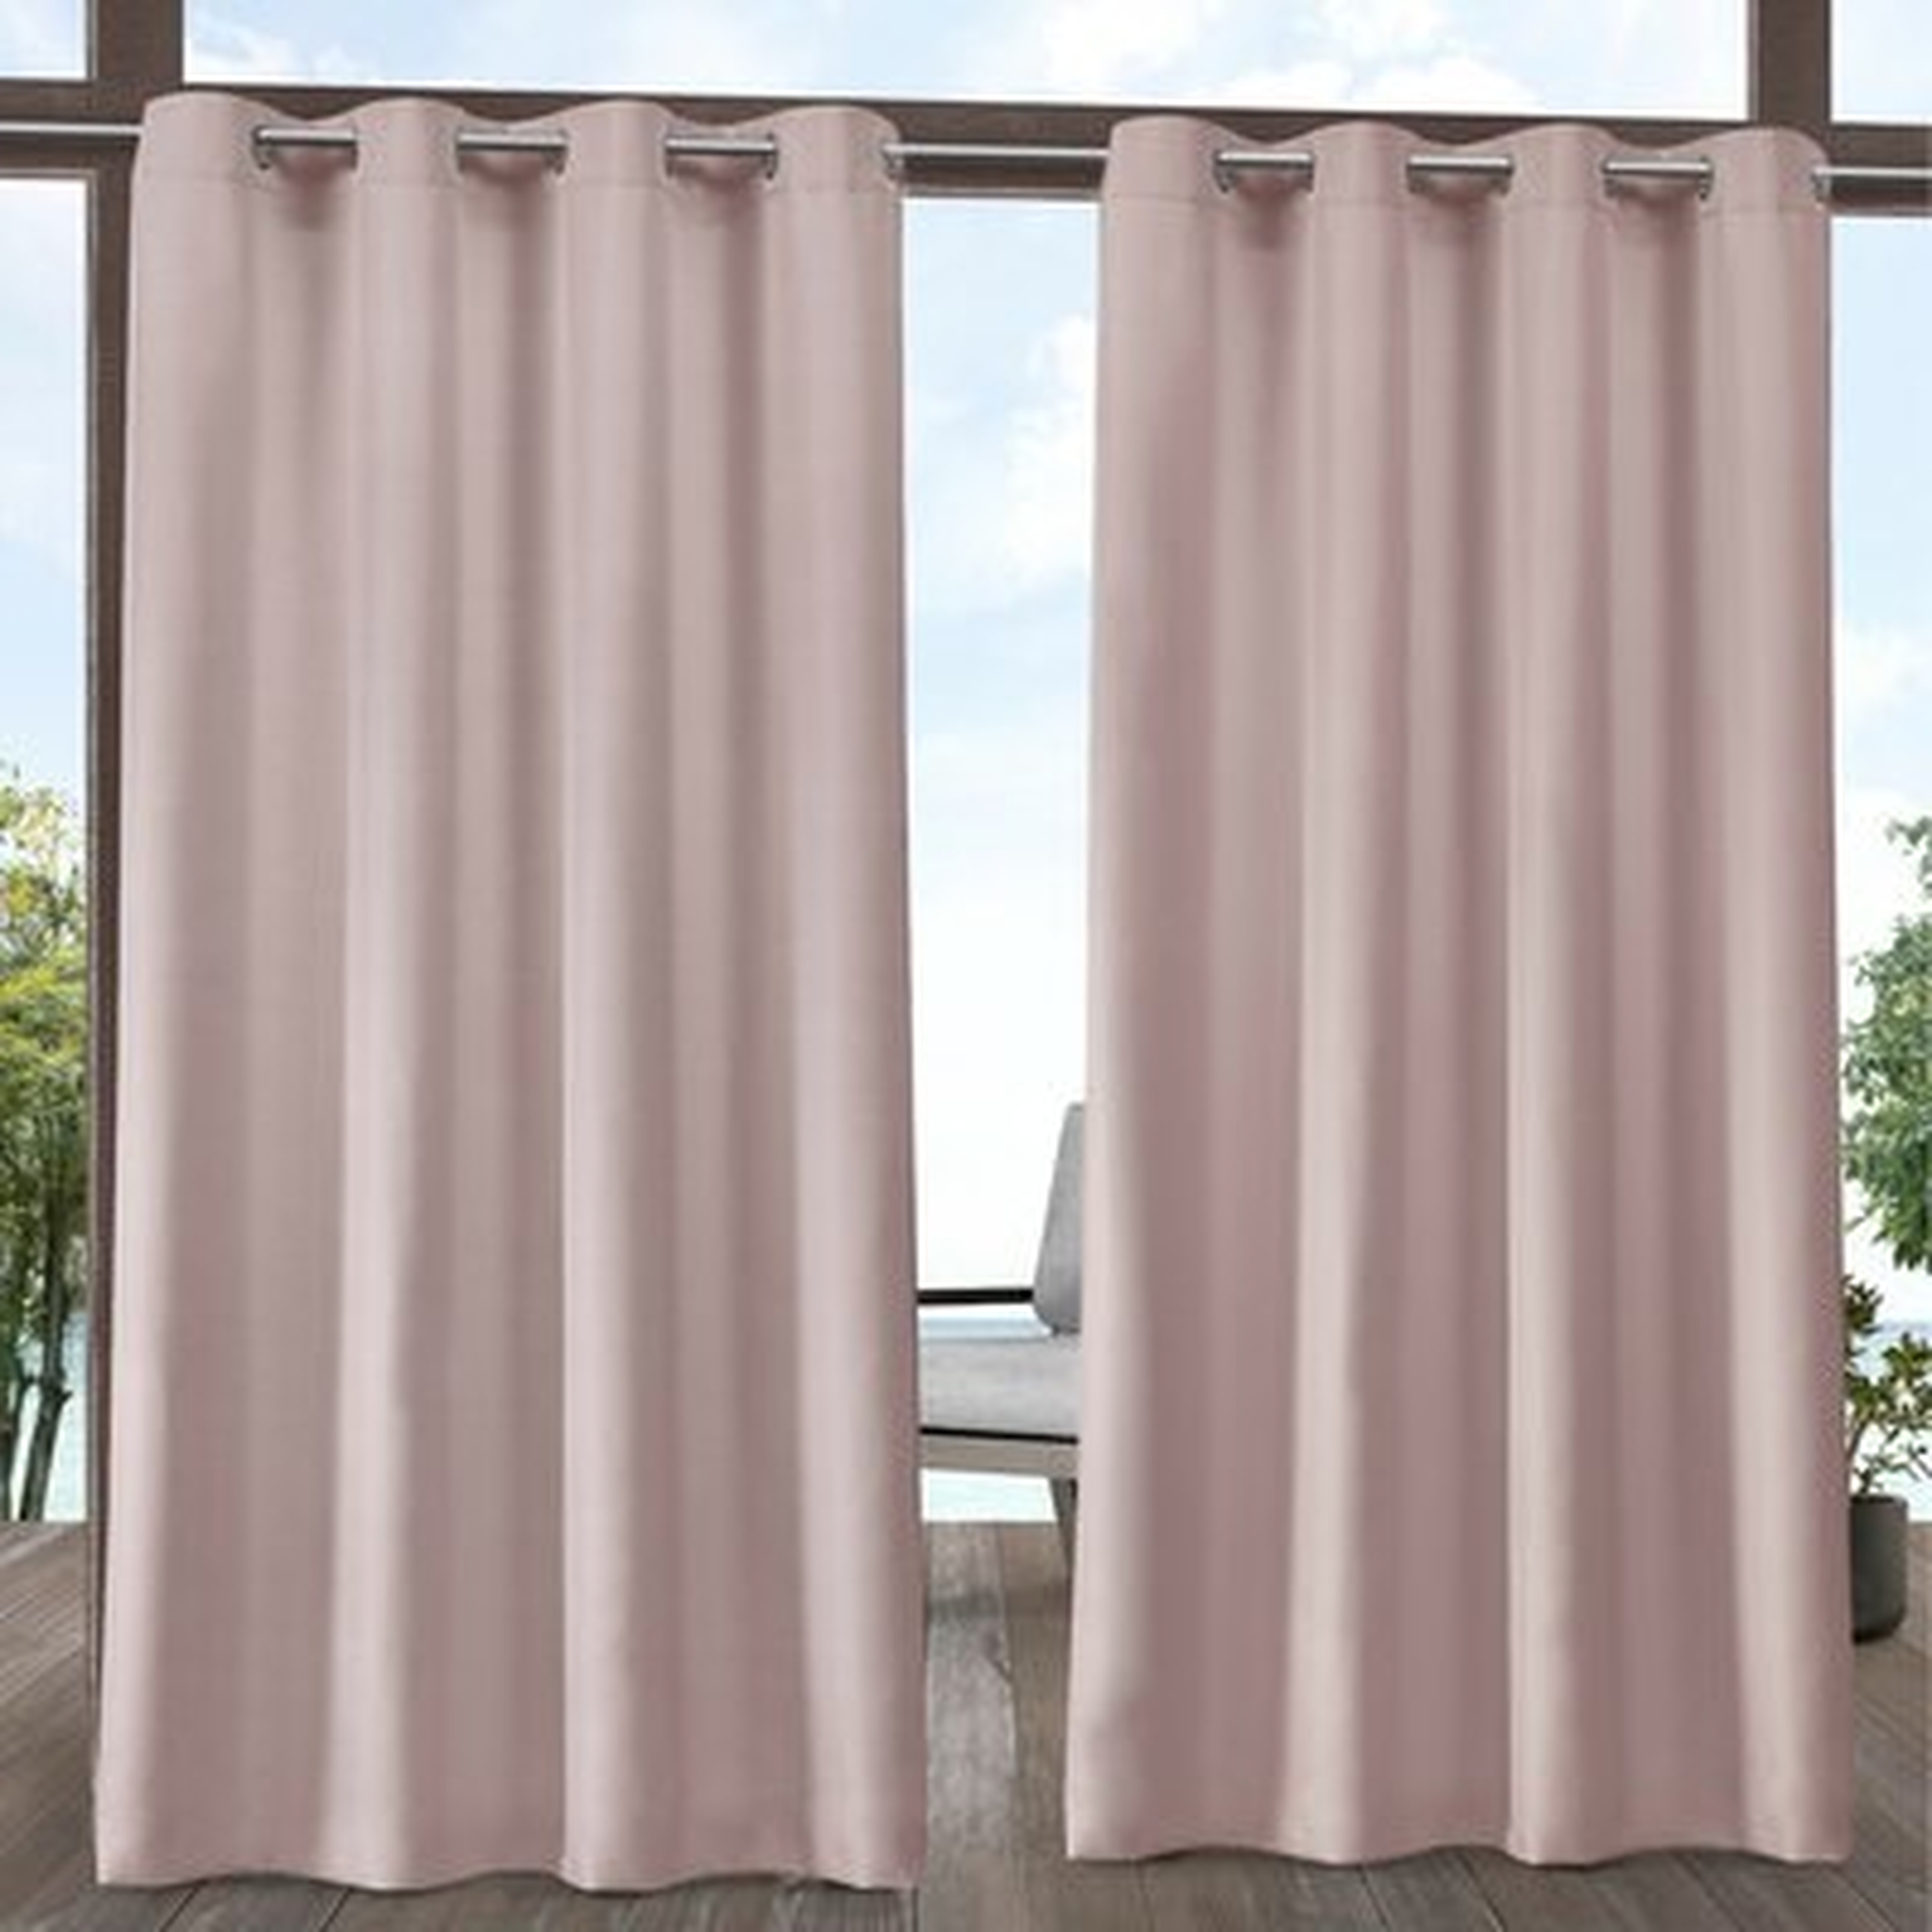 Haoxuan Solid Room Darkening Outdoor Grommet Curtain Panels - Wayfair